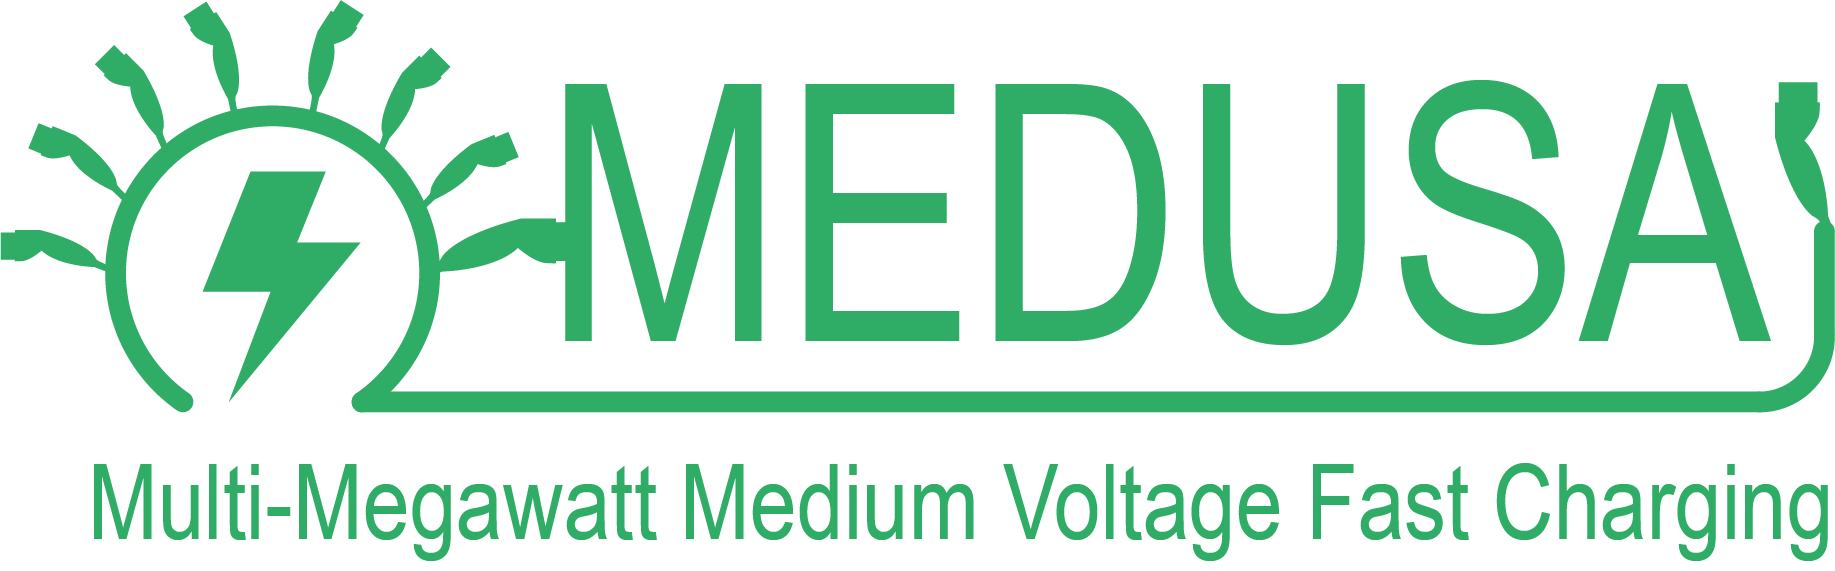 Medusa Logo